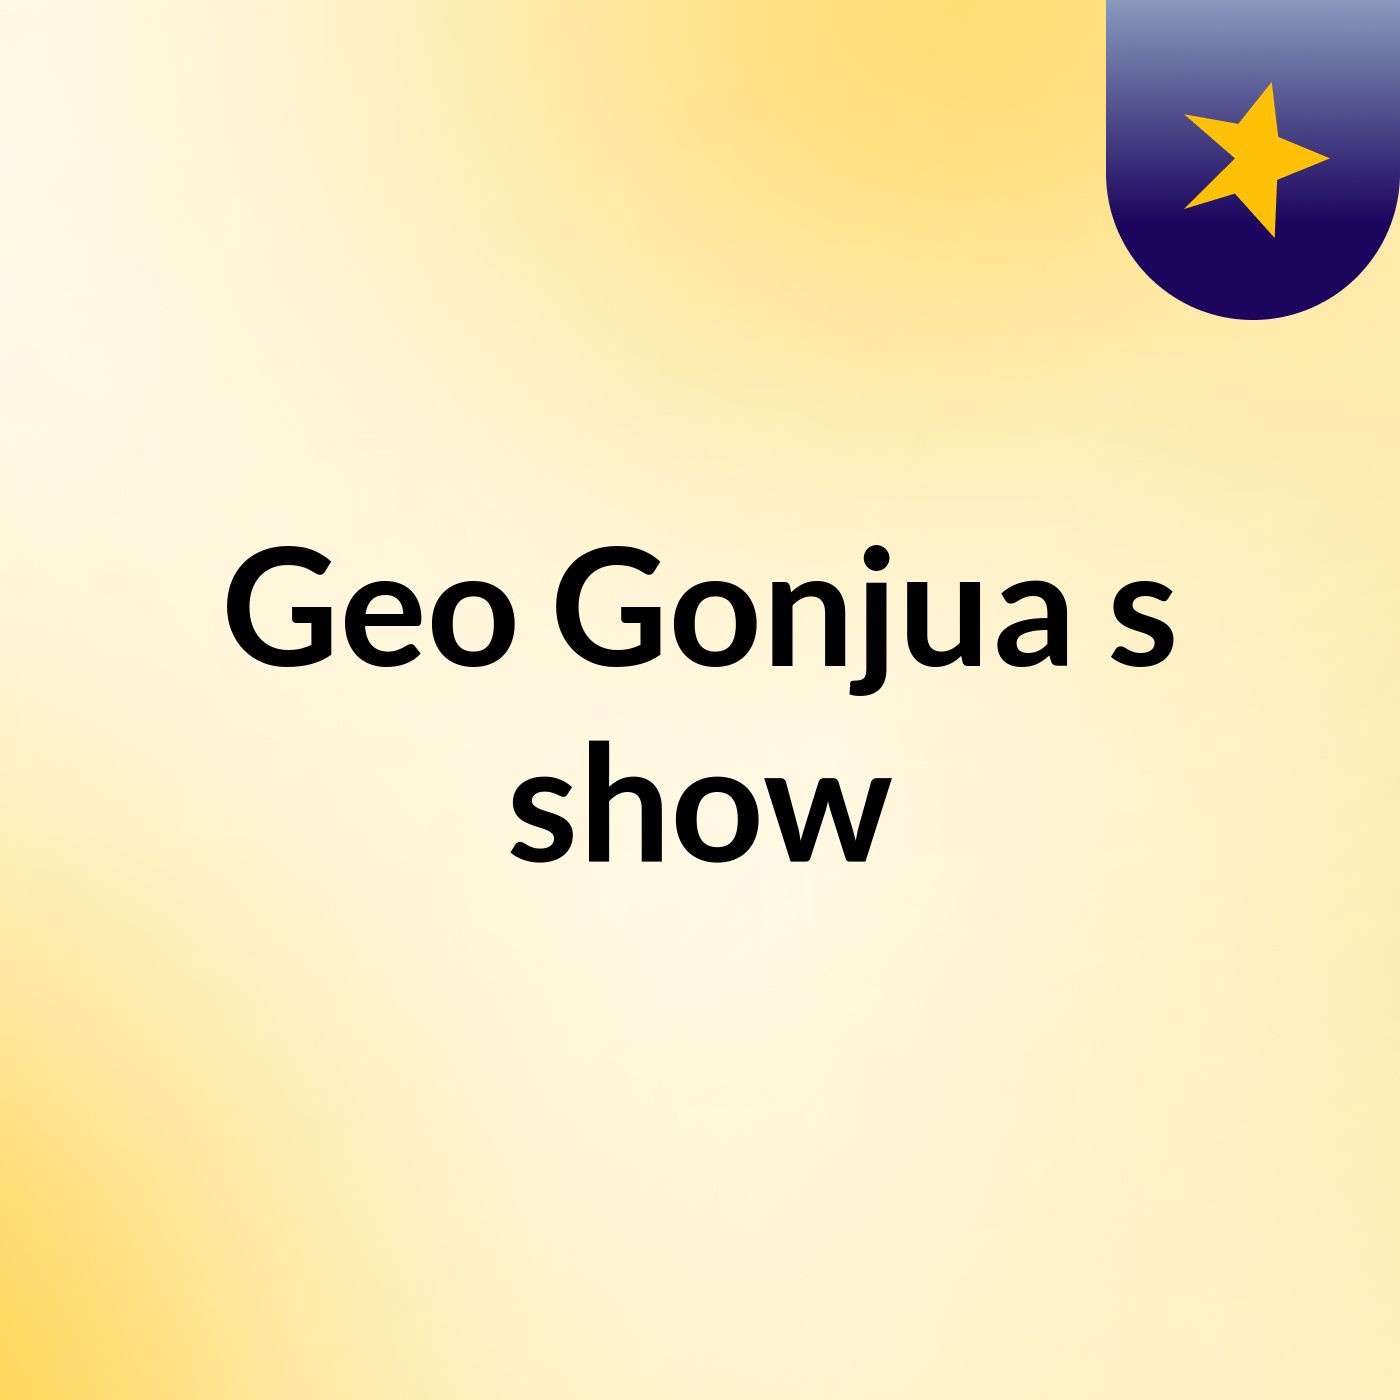 Geo Gonjua's show